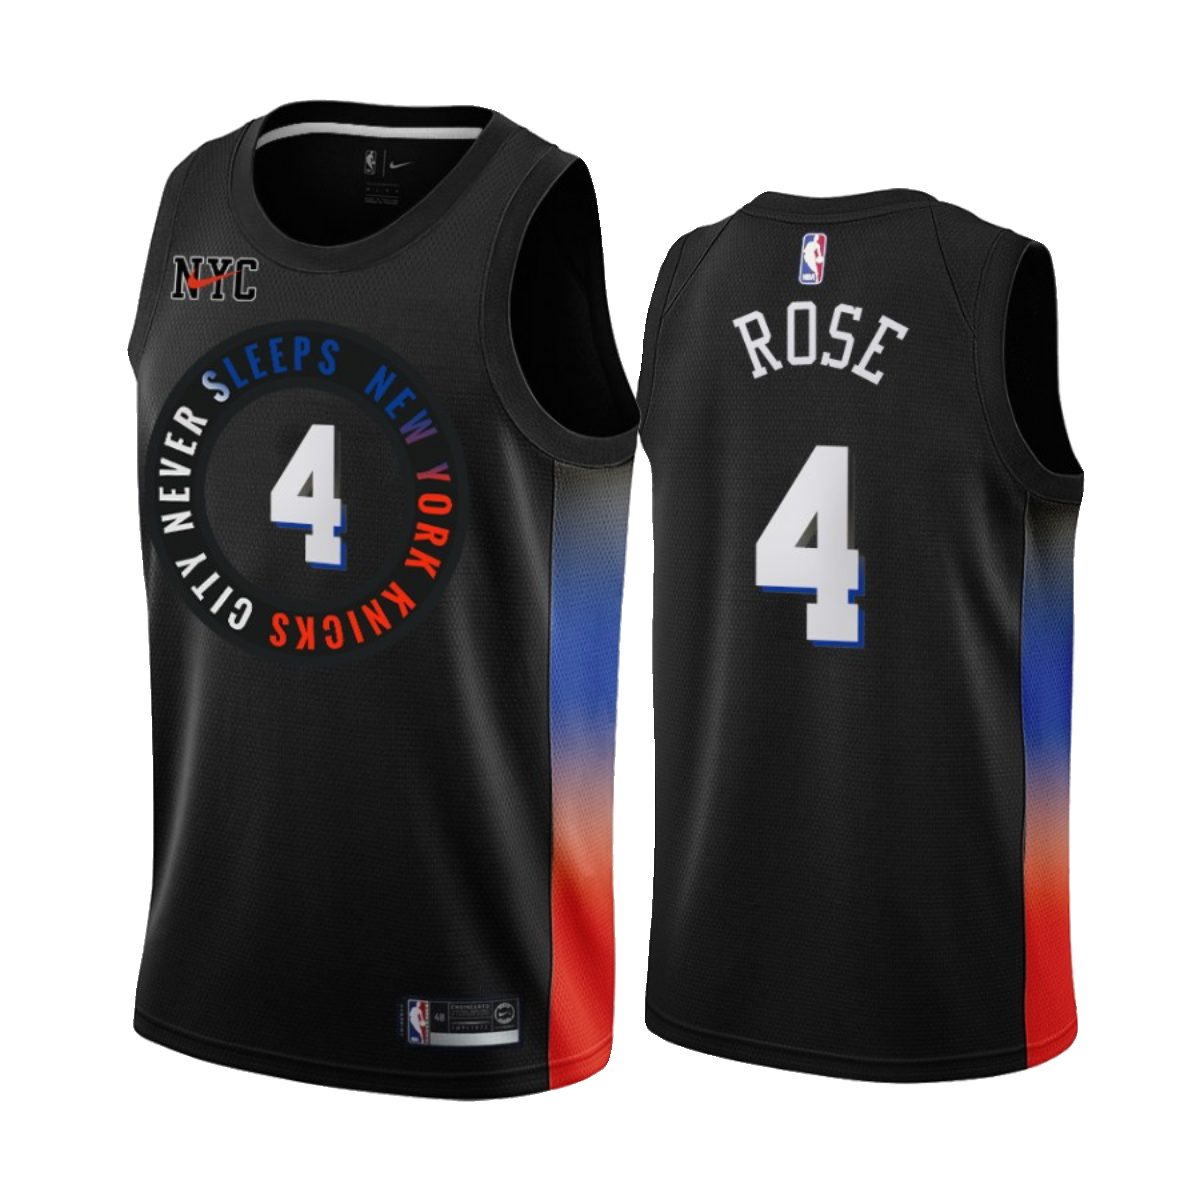 美版 SW 尼克斯队7号安东尼球衣 4号ROSE 罗斯男女篮球服球迷版 - 图3